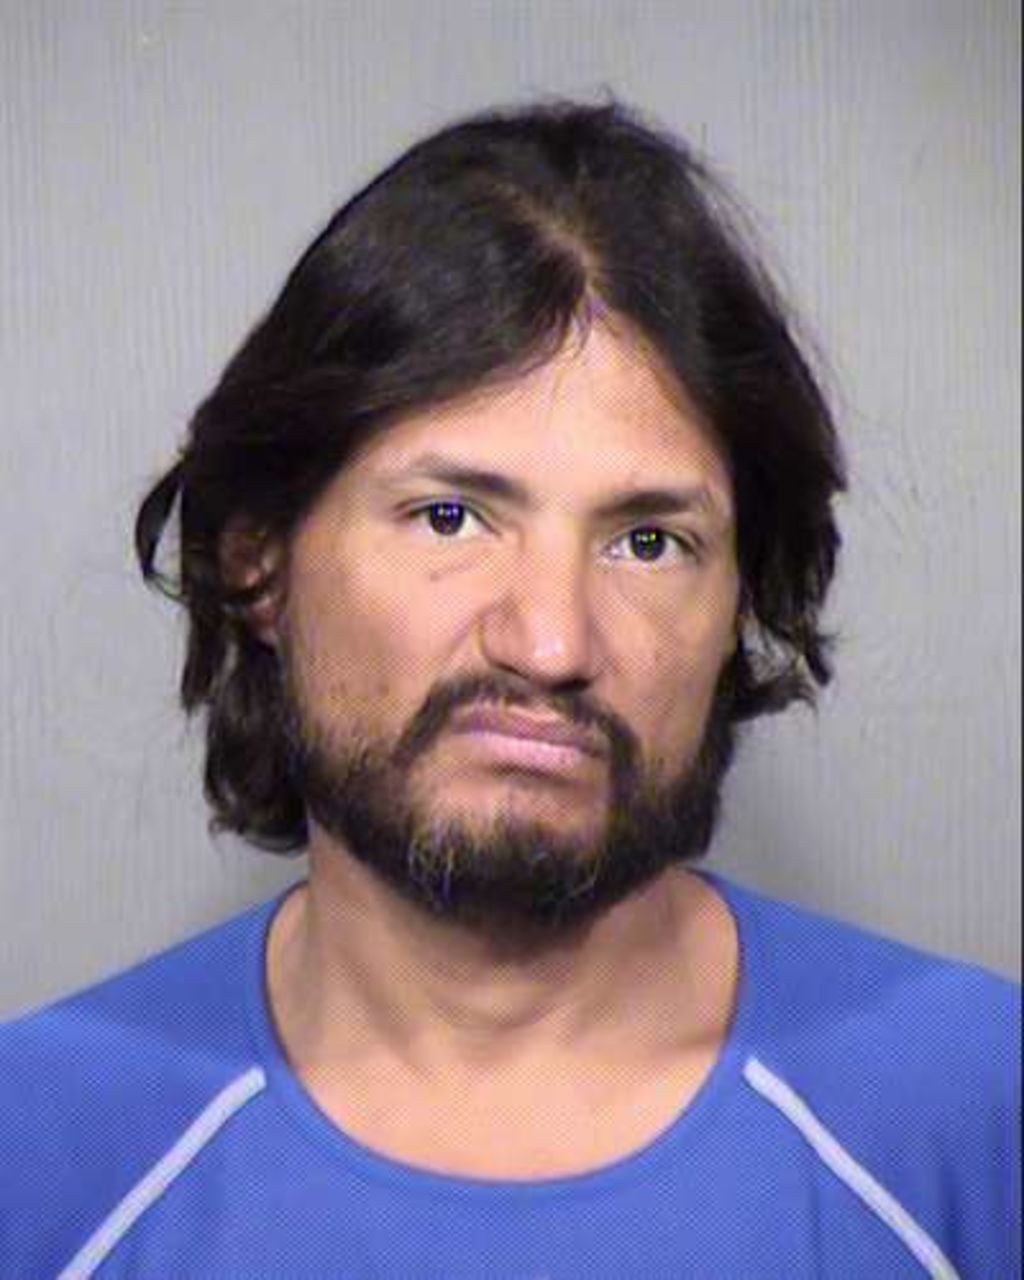 Rubén Peña Jr., de 44 años, fue detenido en diciembre pasado por acosar al sheriff Arpaio y escribir una carta con amenazas, lo que provocó una exhaustiva búsqueda de explosivos en el centro de Phoenix. (ARCHIVO)